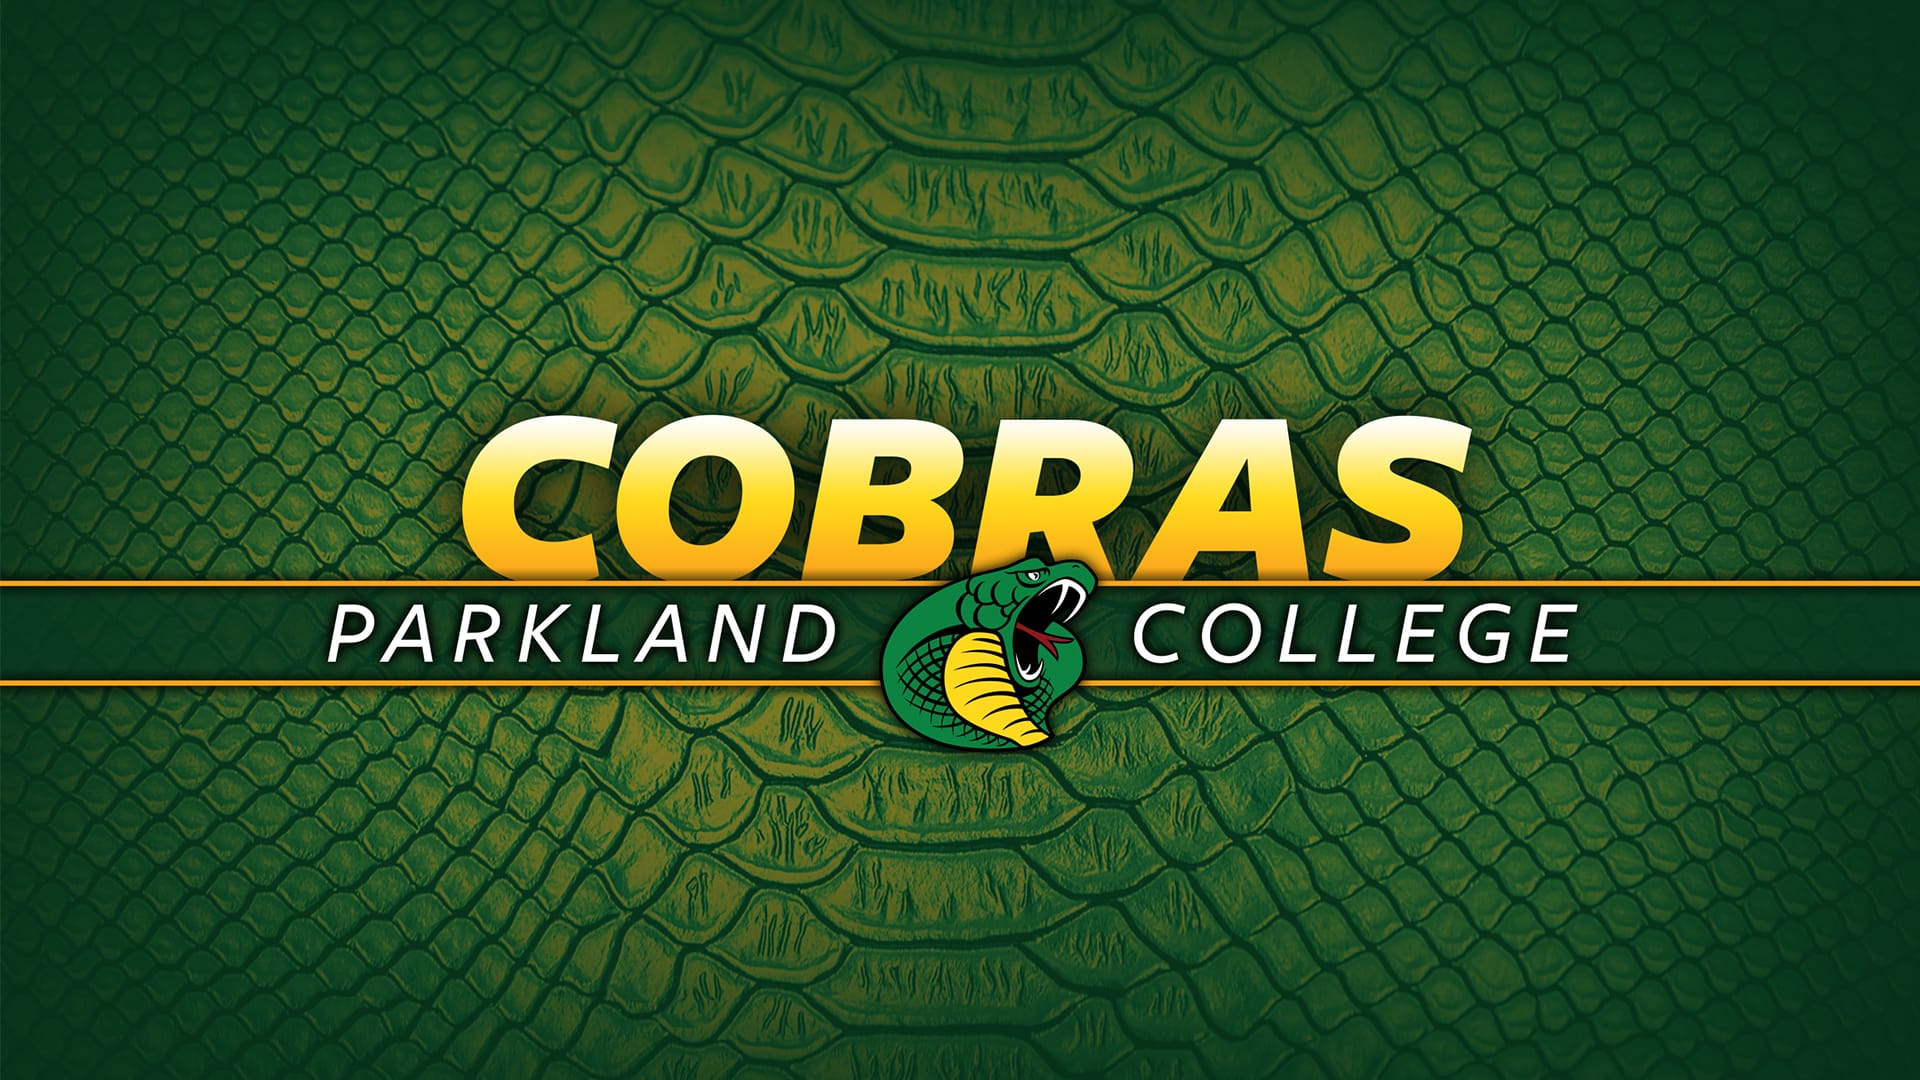 parkland college cobras logo on green snakeskin background